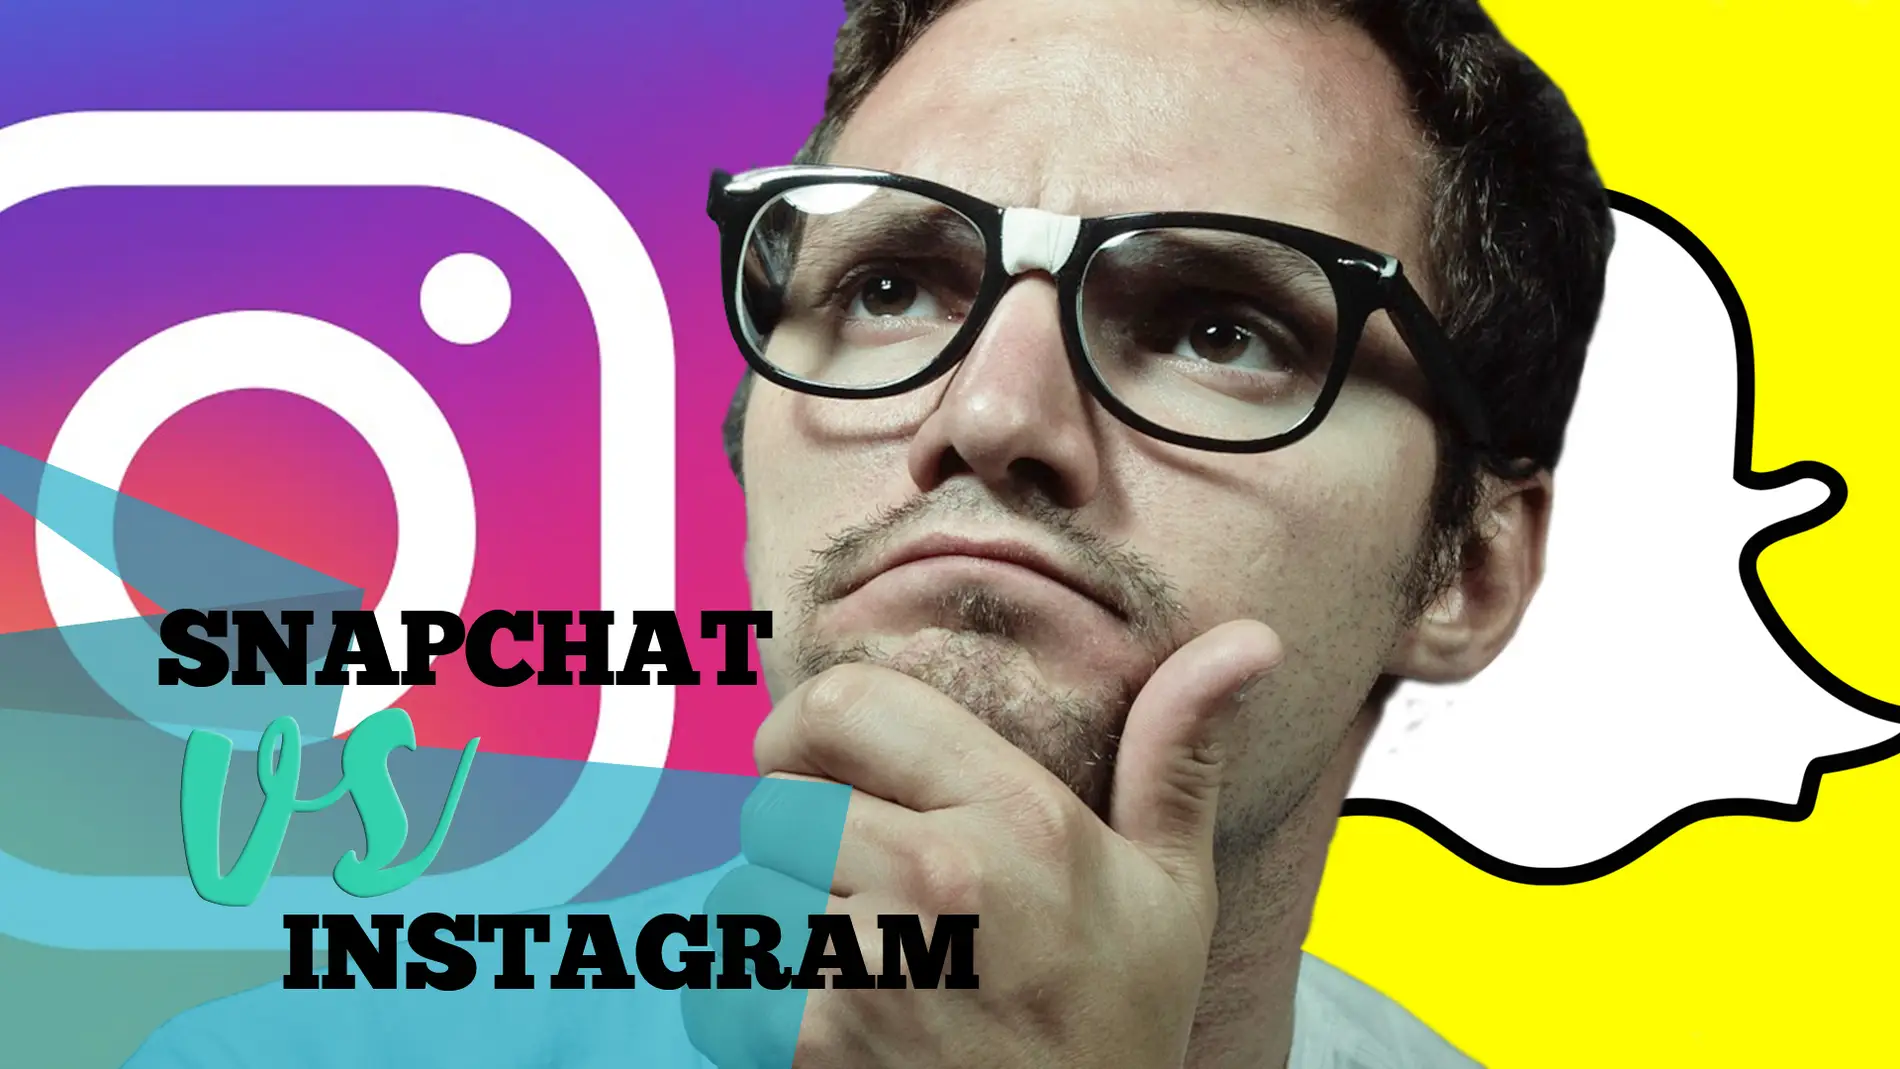 Curiositips Ciencia y Tecno - Snapchat VS Instagram